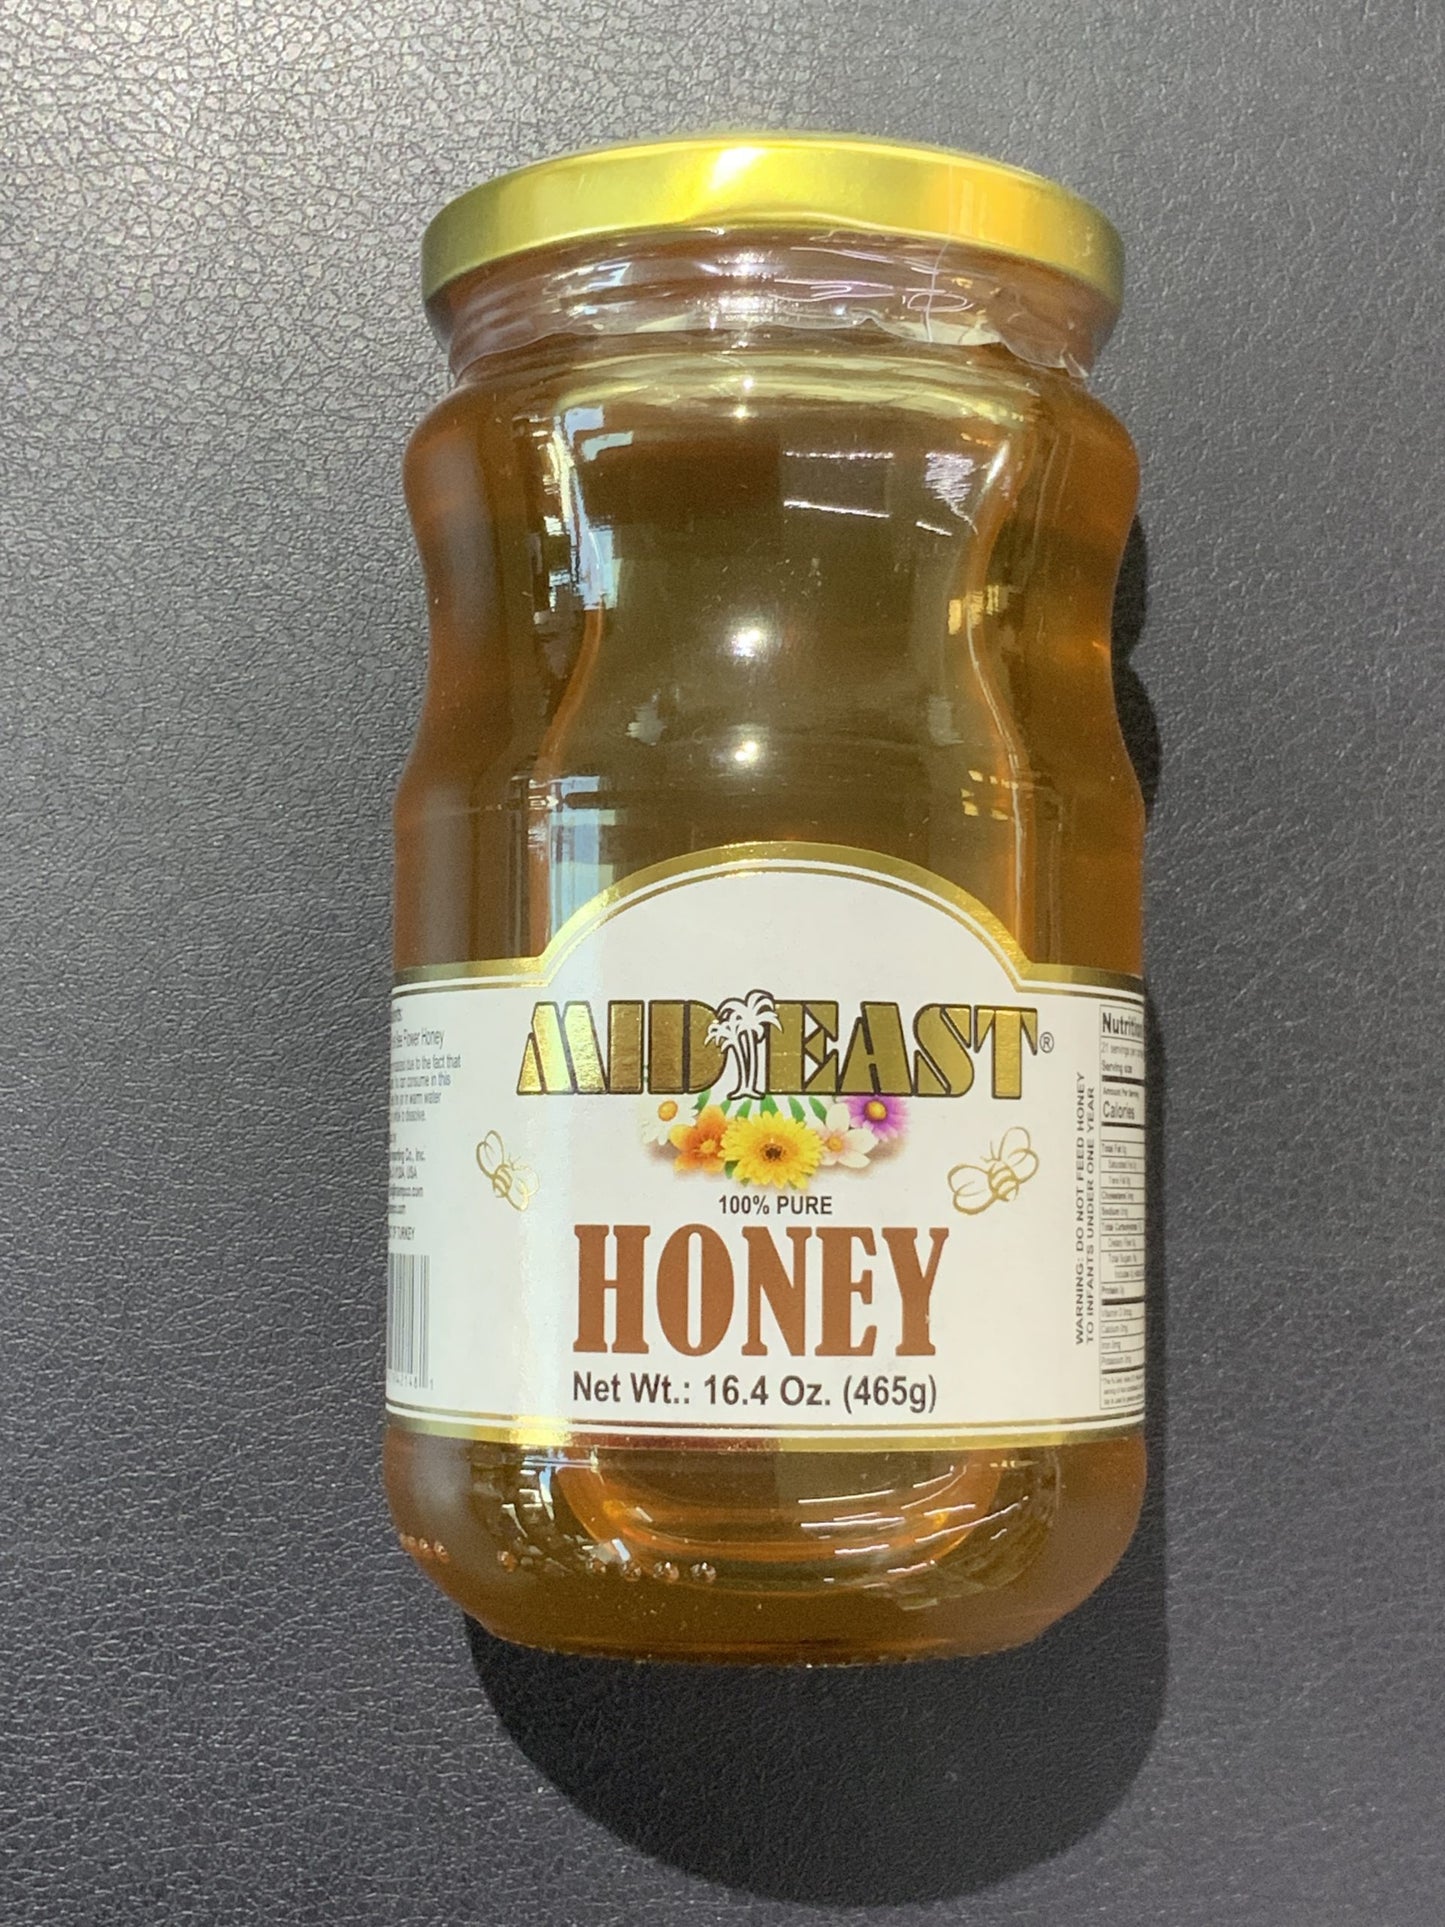 Mideast Honey - 16.4 oz